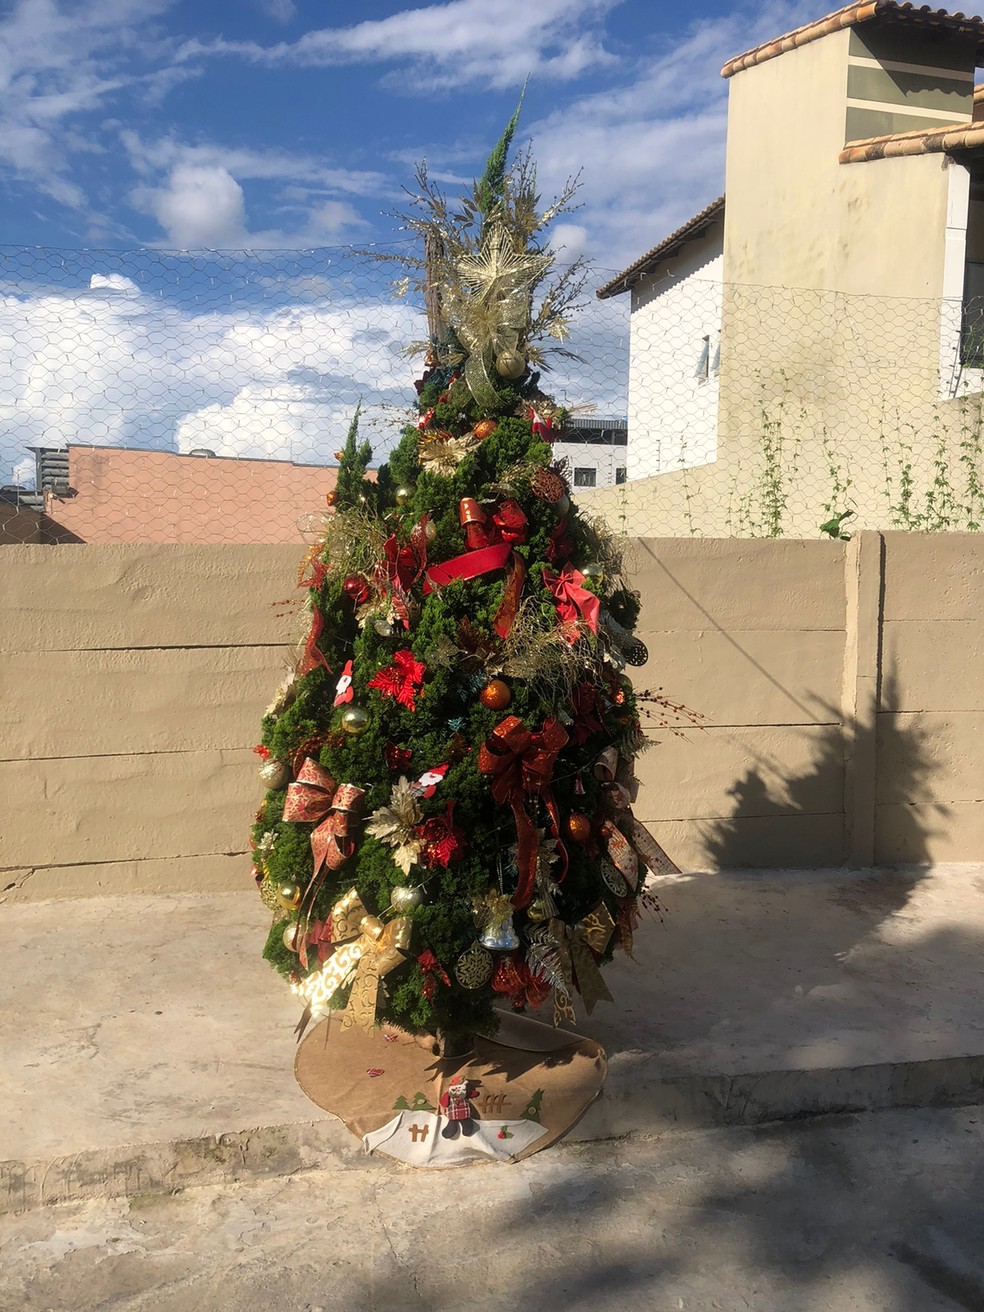 VÍDEO: árvore de Natal no meio da calçada chama atenção de moradores em MG  | Centro-Oeste | G1